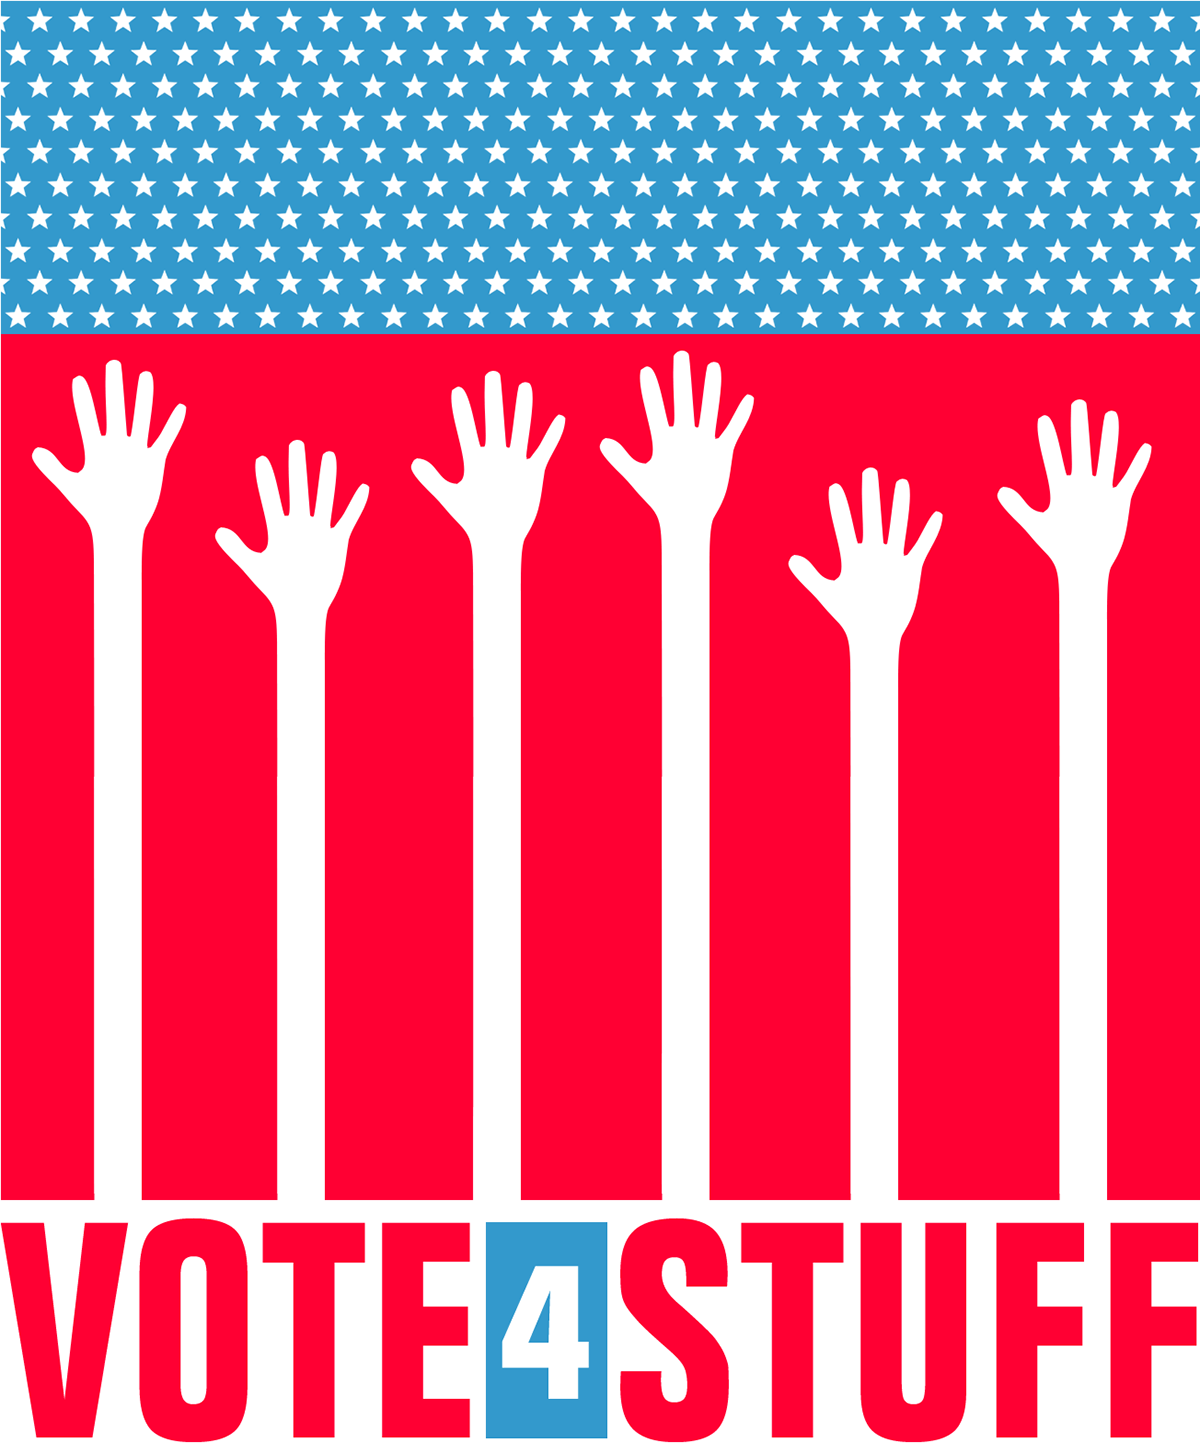 vote Election politics campaign logo brand identity